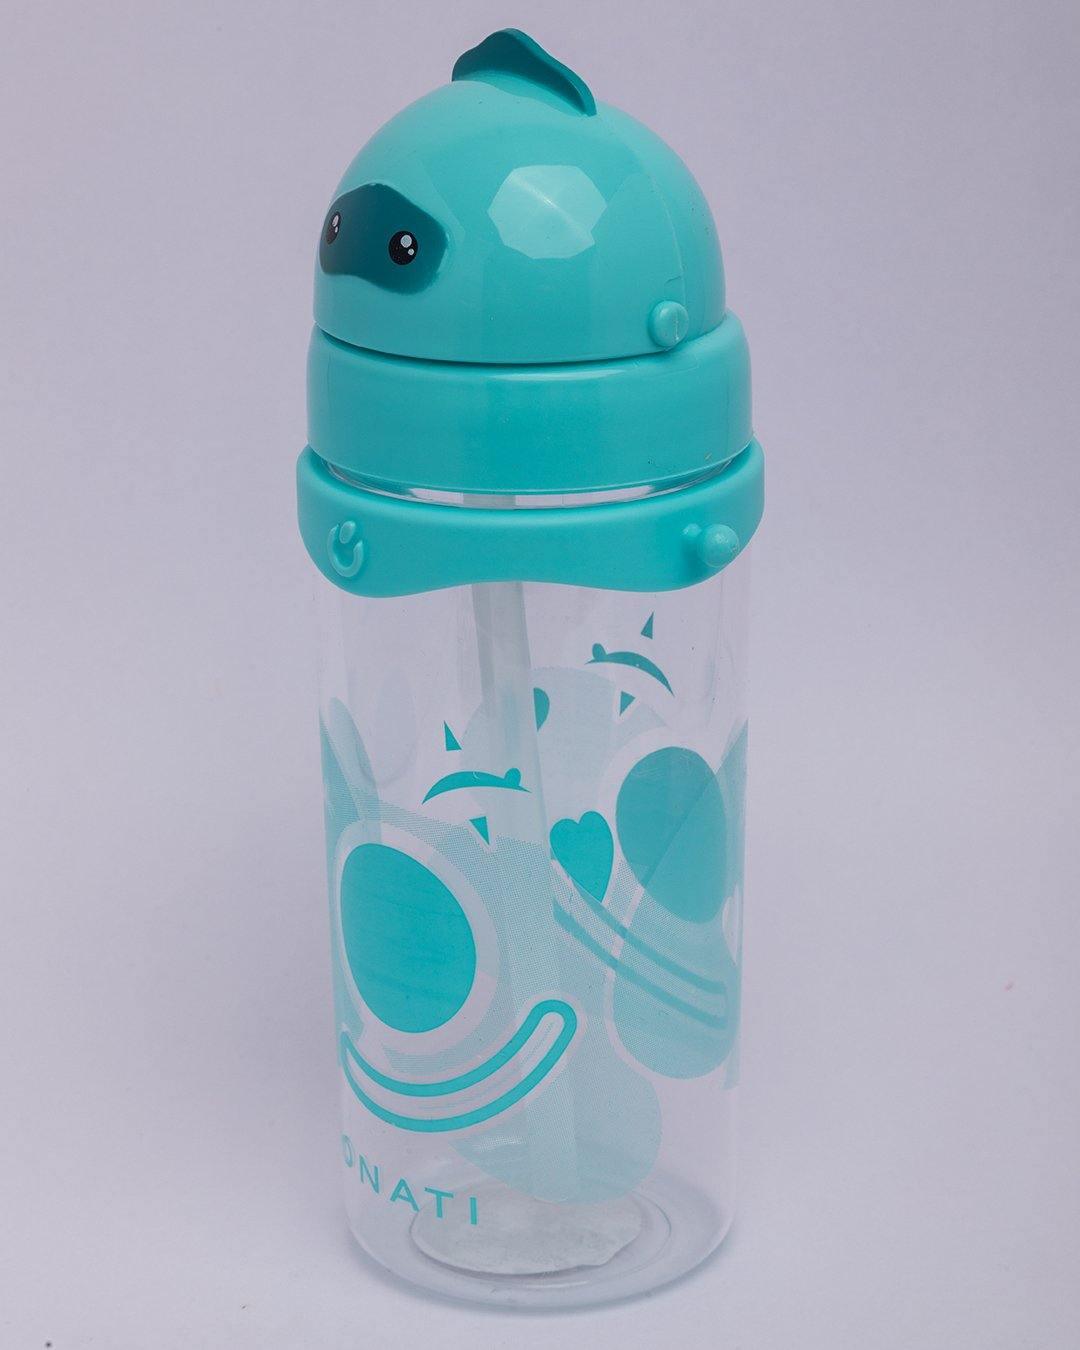 Donati Sipper, for Kids, Bottle, Blue, Plastic, 500 mL - MARKET 99